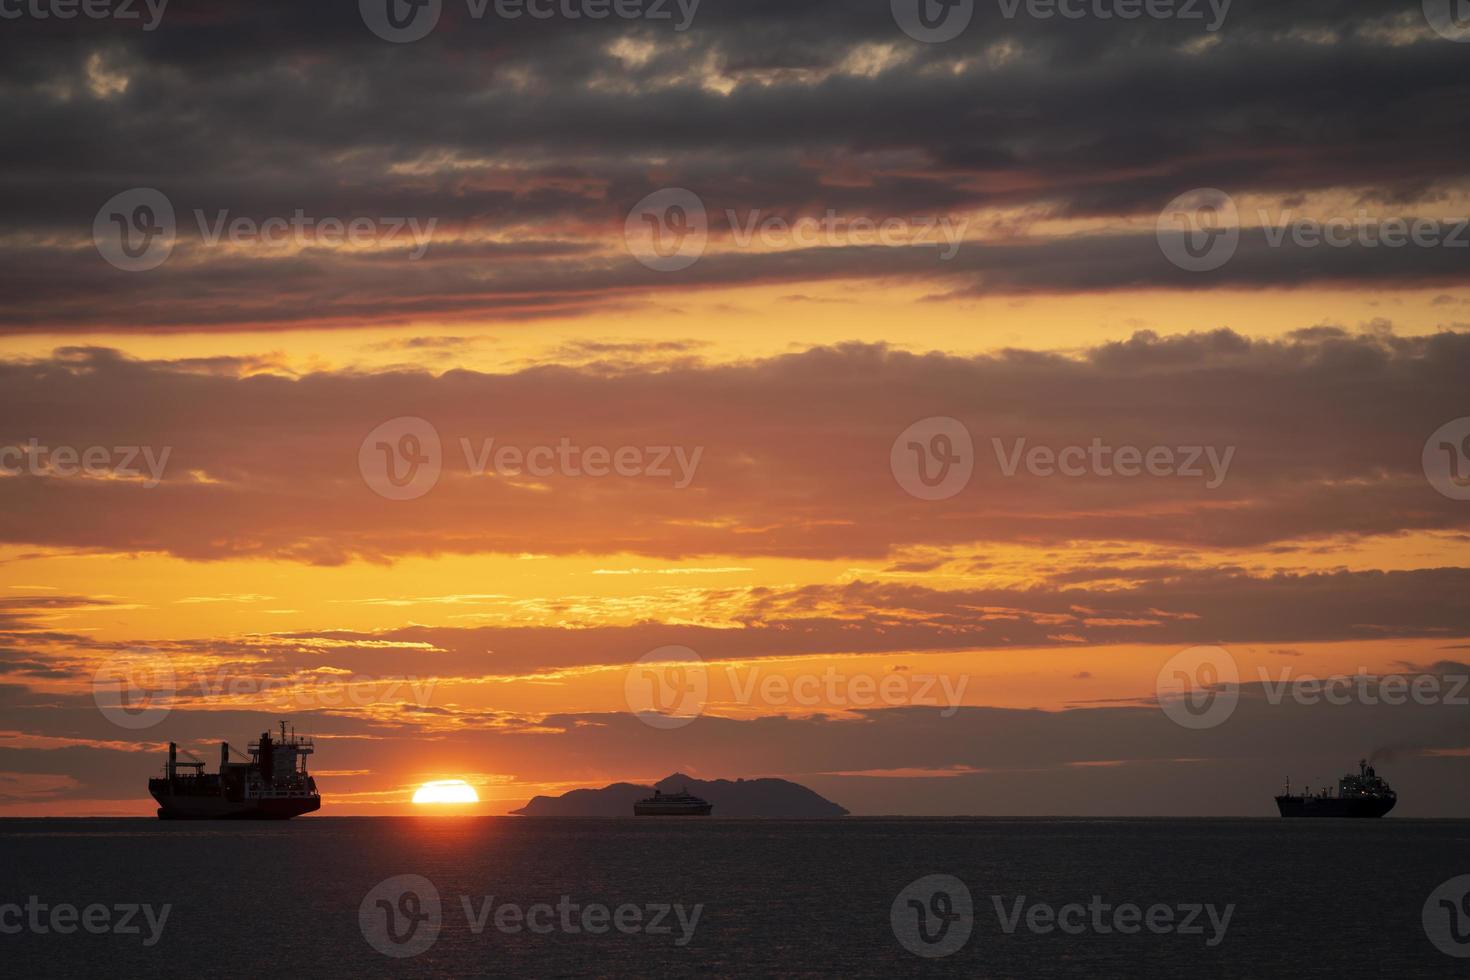 coucher de soleil fantastique avec des navires une île et trois navires en contre-jour photo